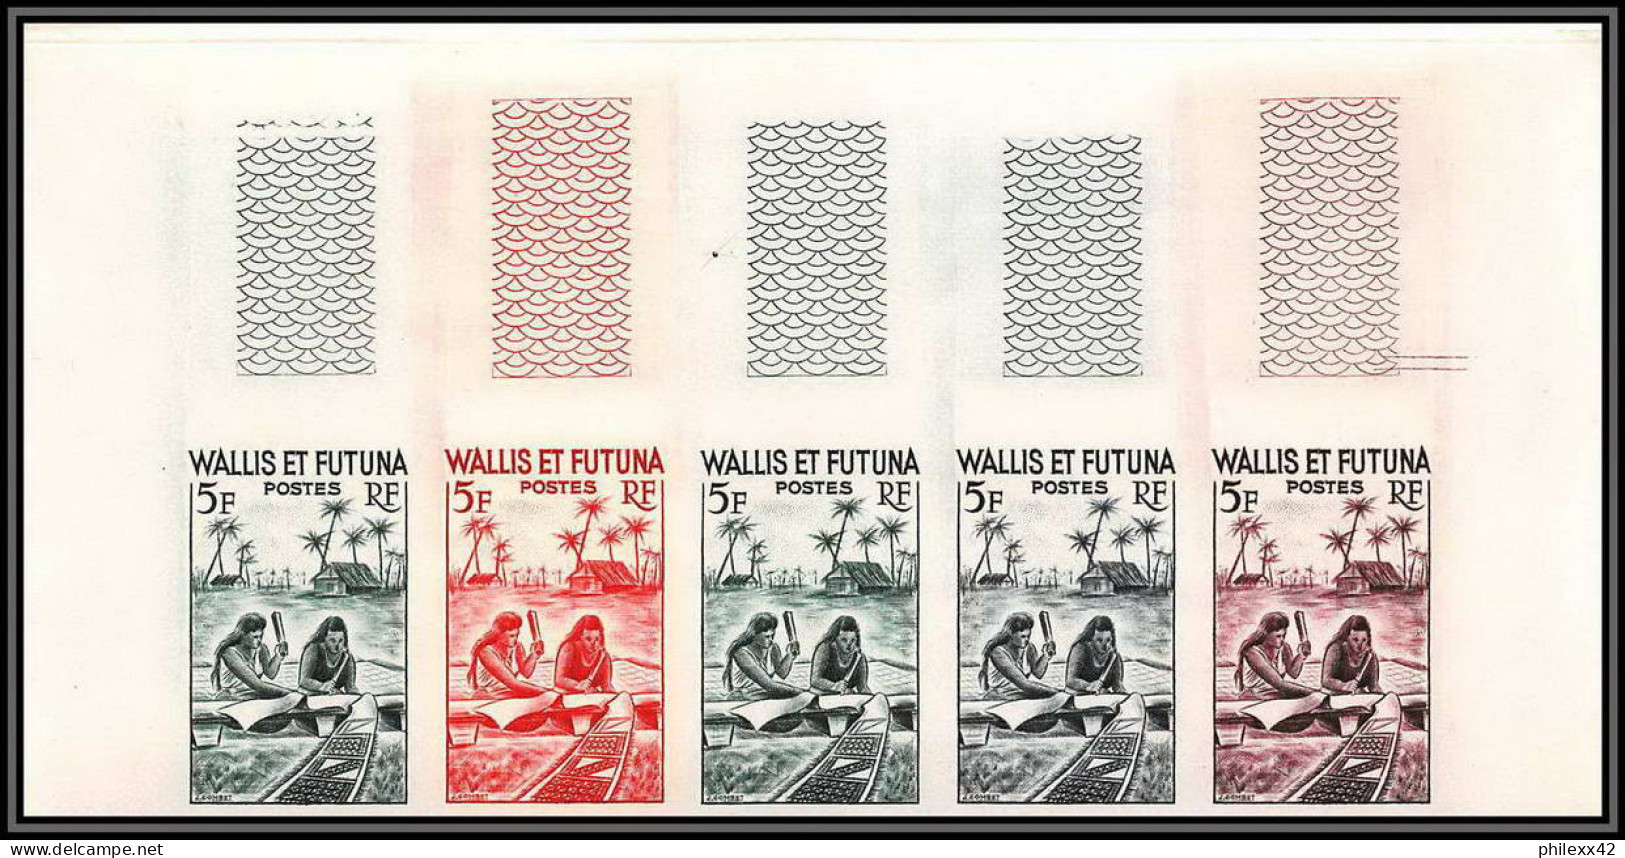 92538 Wallis Et Futuna N°157A Fabrication D'un Tapa 1957 Arbre à Pain Breadfruit Essai Proof Non Dentelé Imperf ** MNH - Imperforates, Proofs & Errors